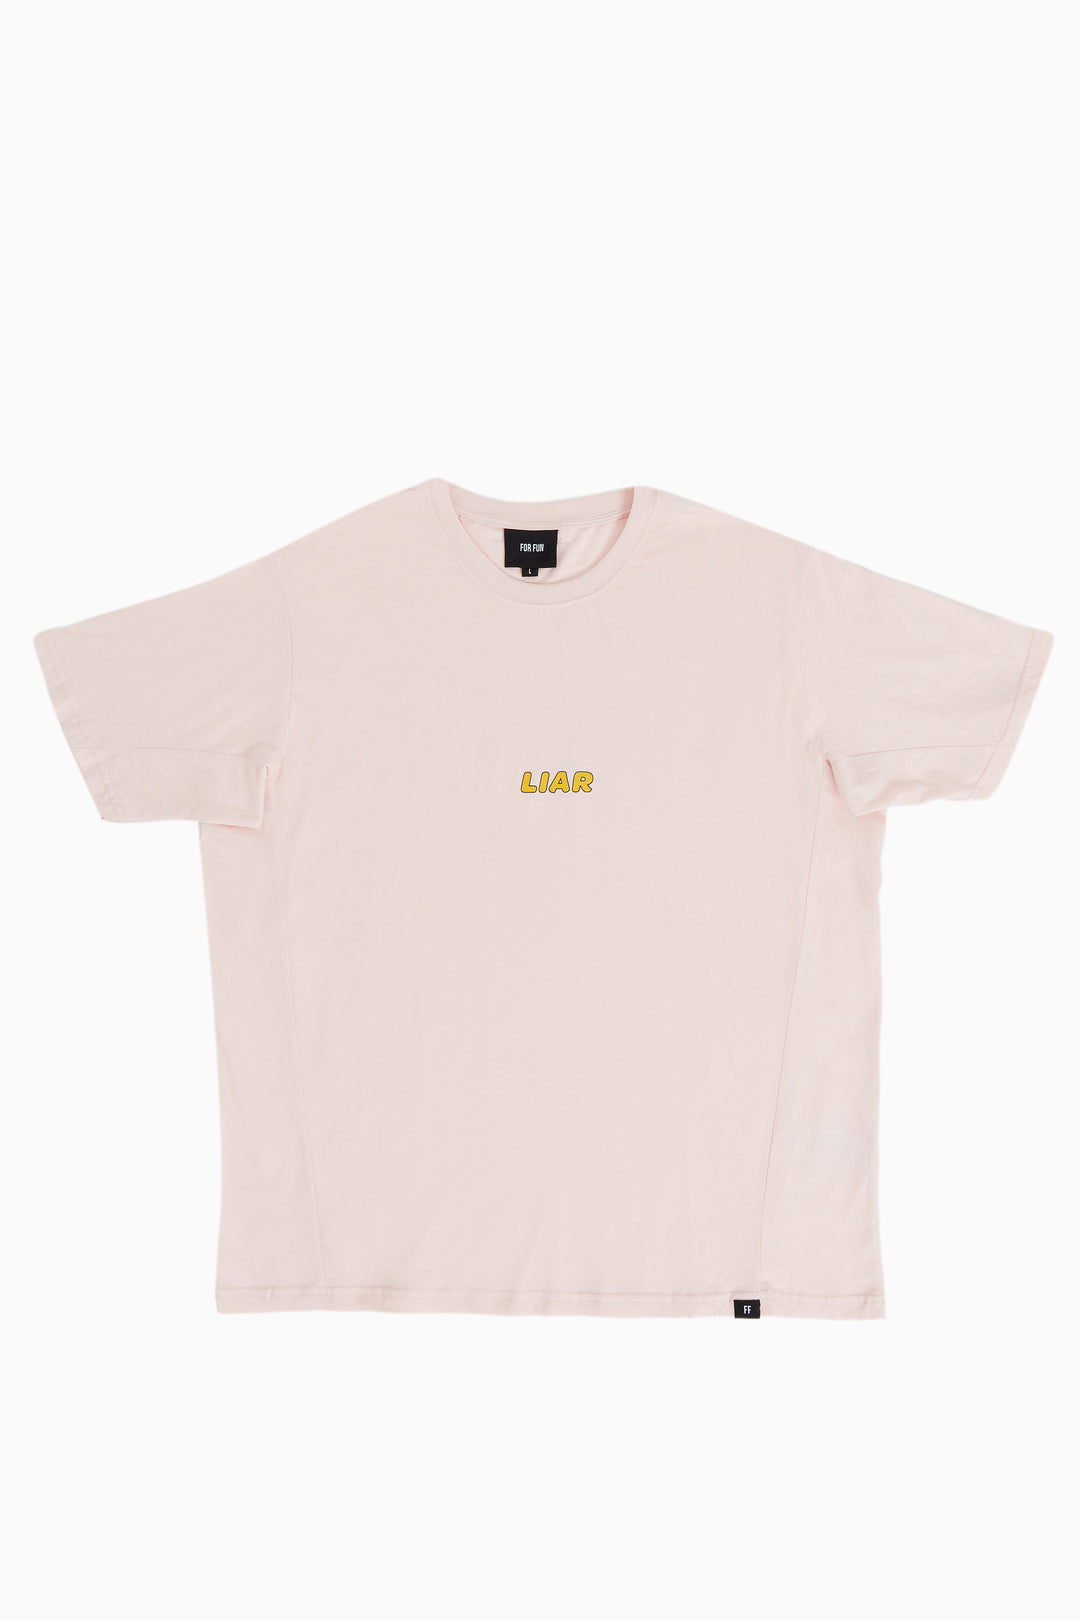 Liar / Oversize T-shirt